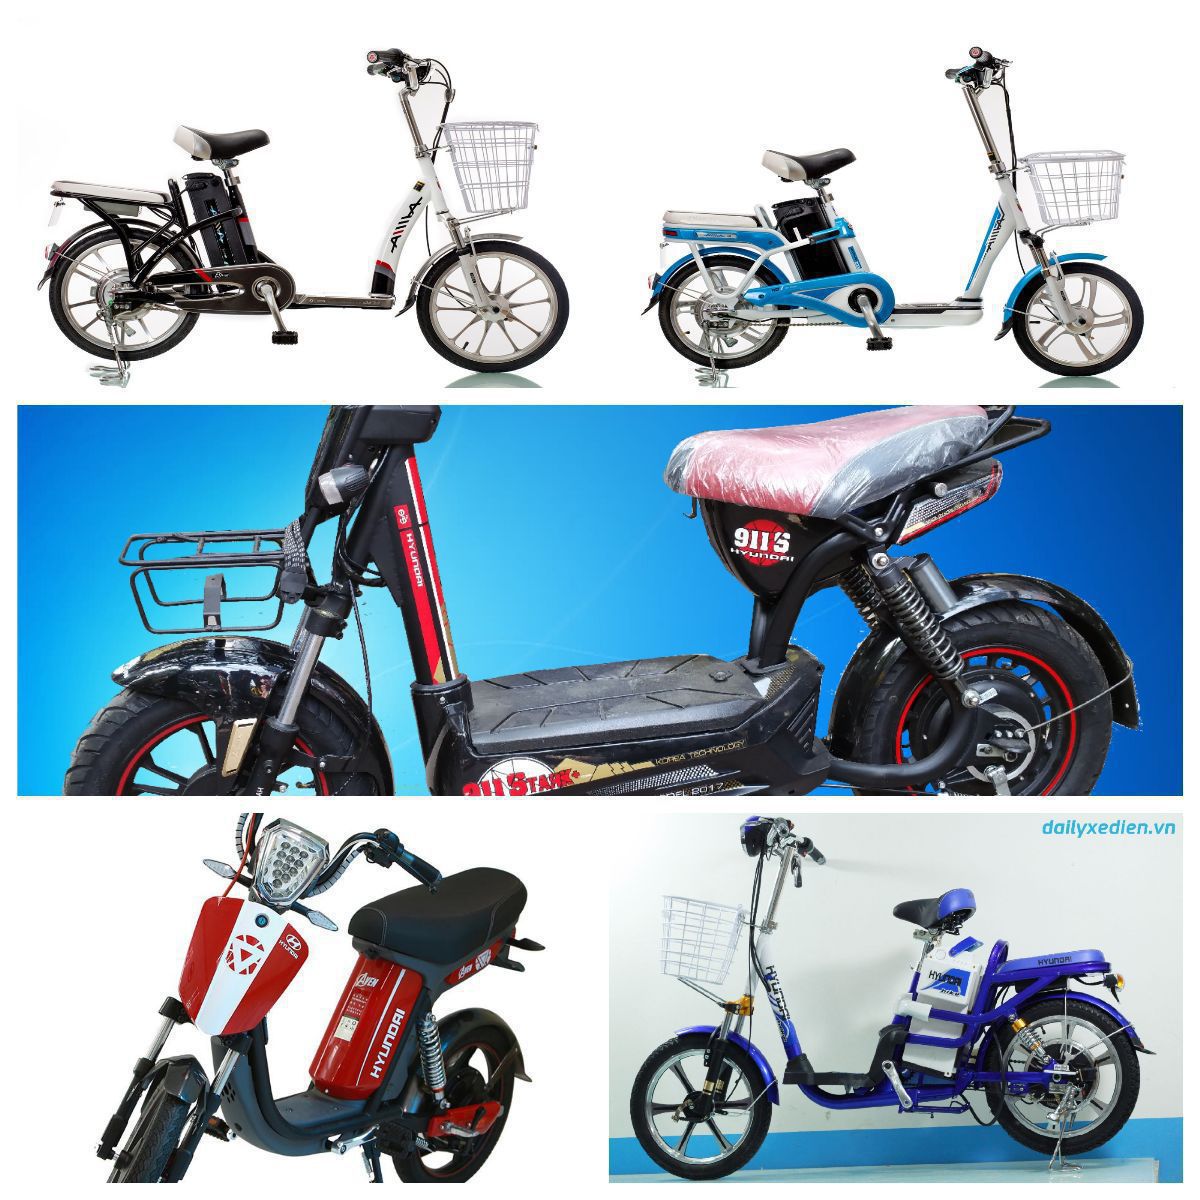 Những dòng Xe đạp điện giá rẻ nhất tại Bluera